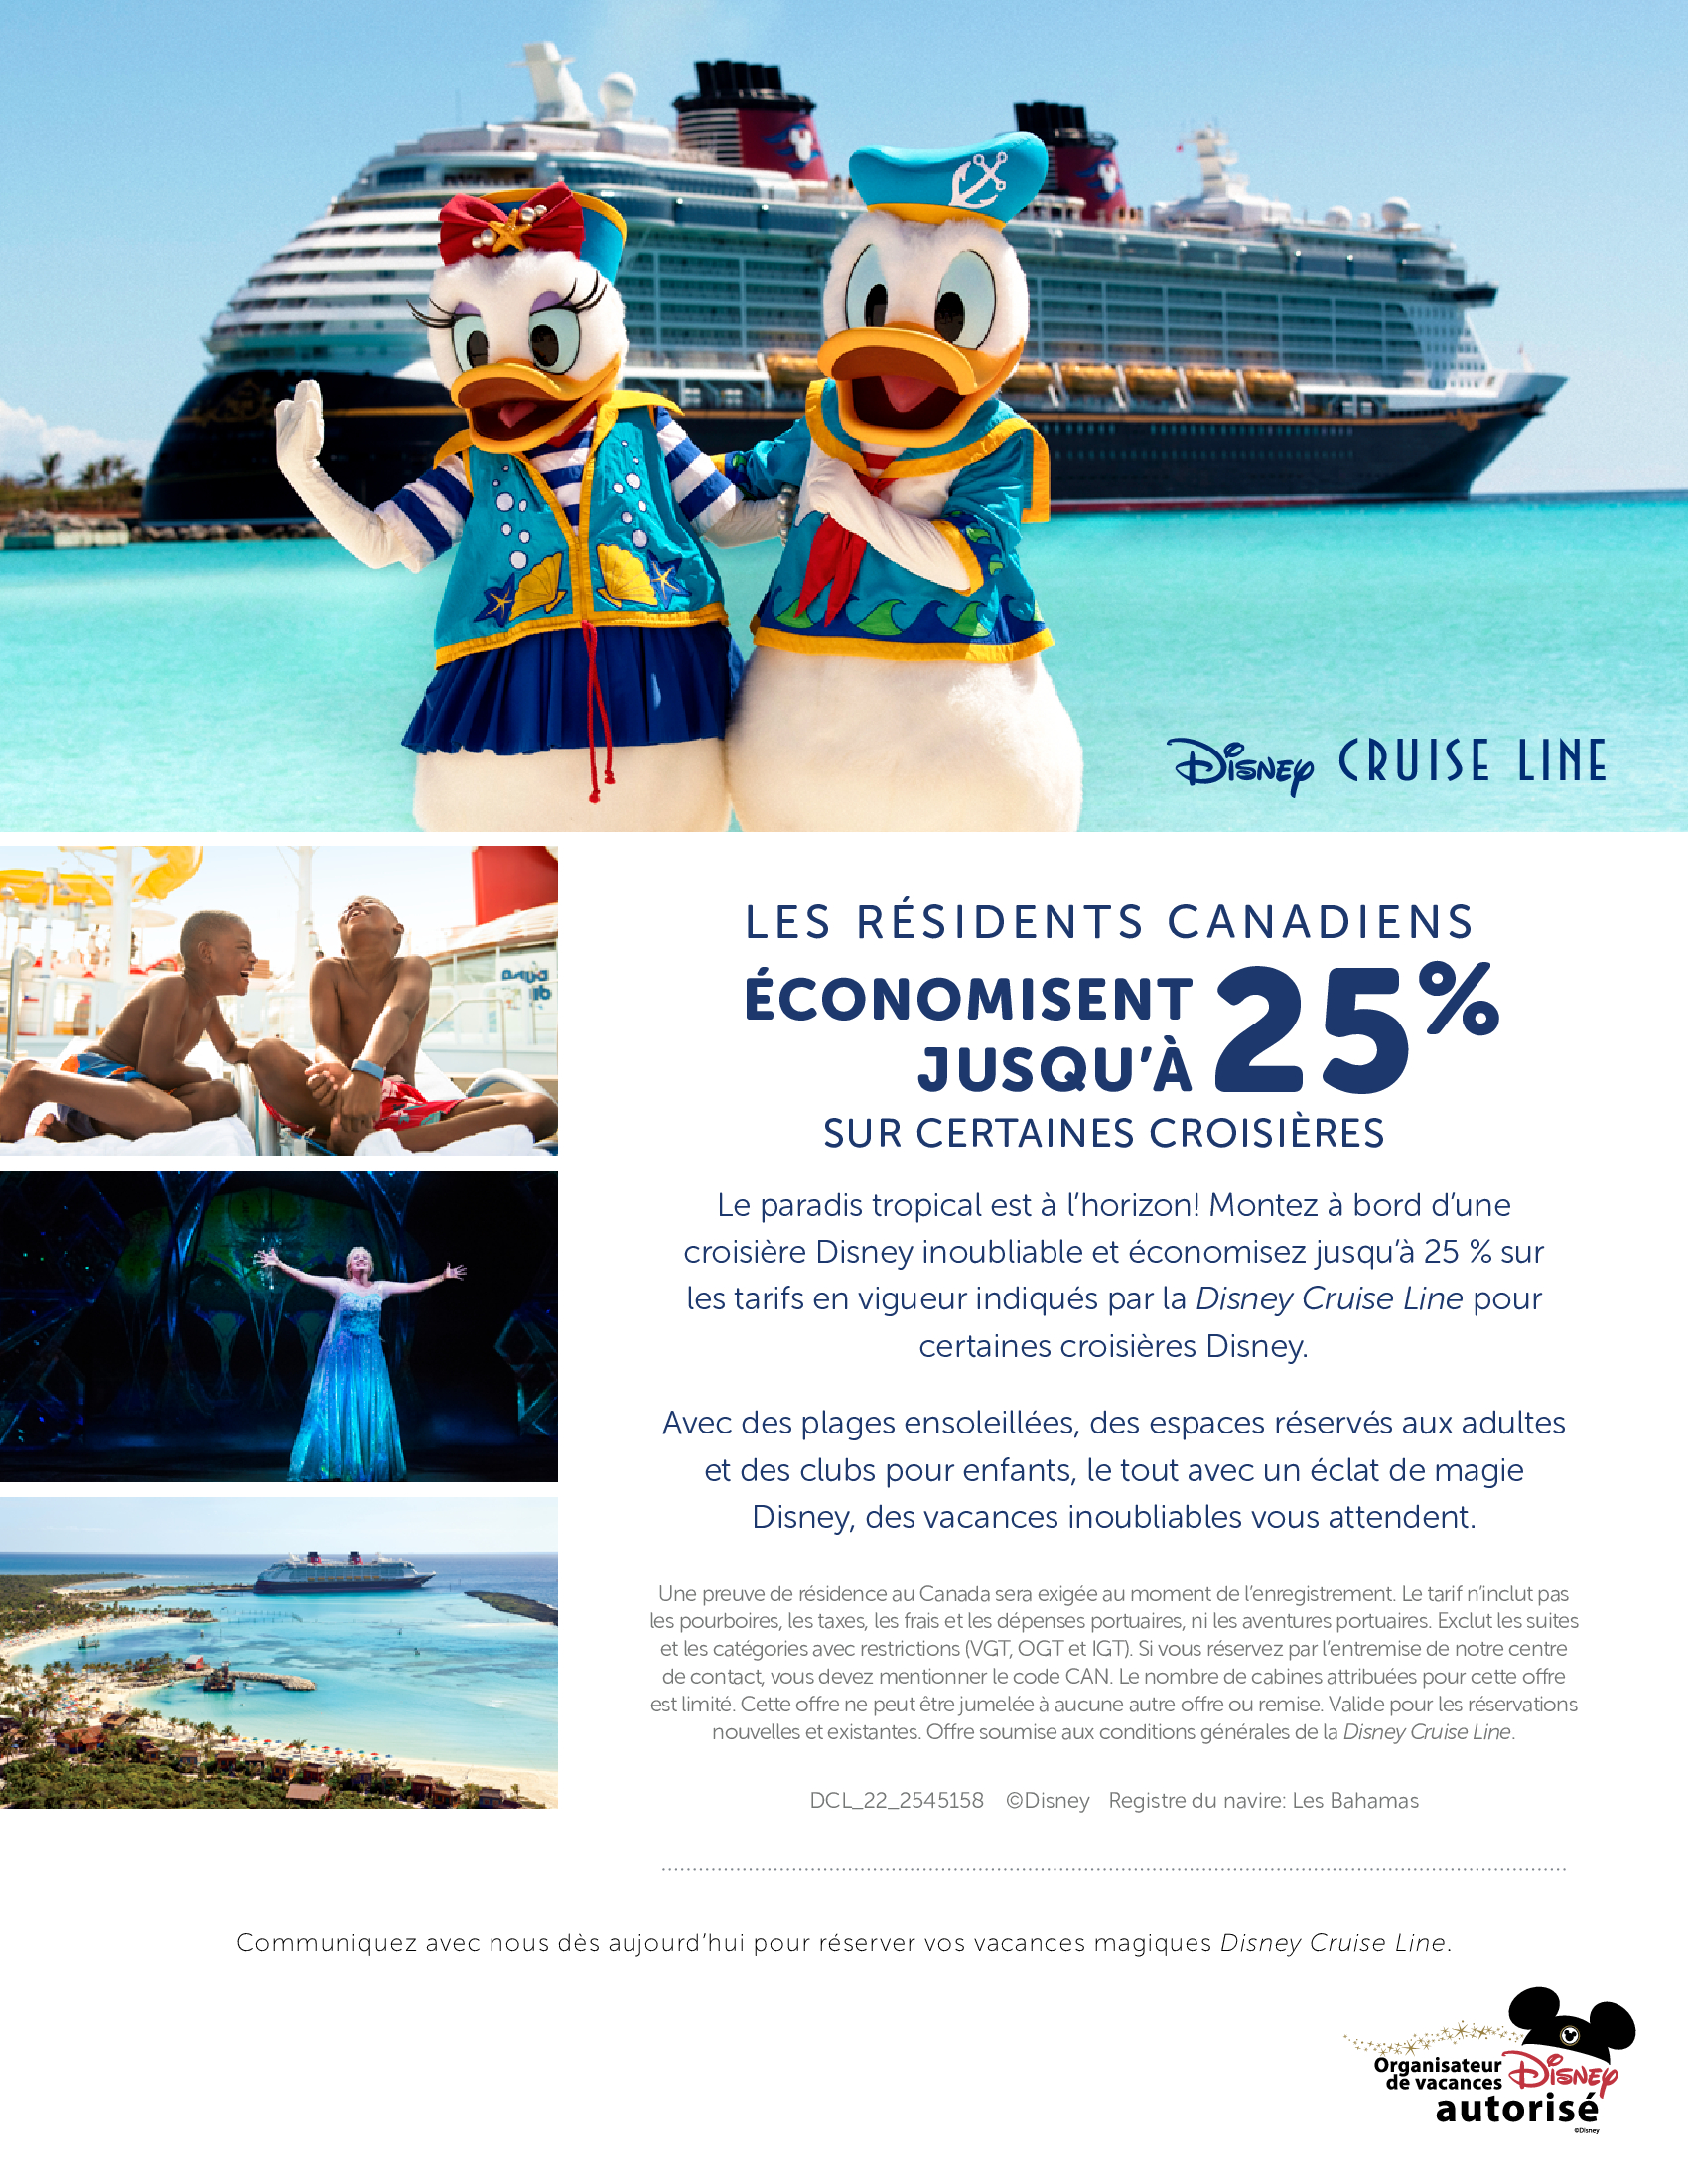 Disney Cruise Line - La magie vous attend! Profitez de 50% de rabais sur votre dépôt. Réservez avec les Créateurs de Magie - Voyages Synergia